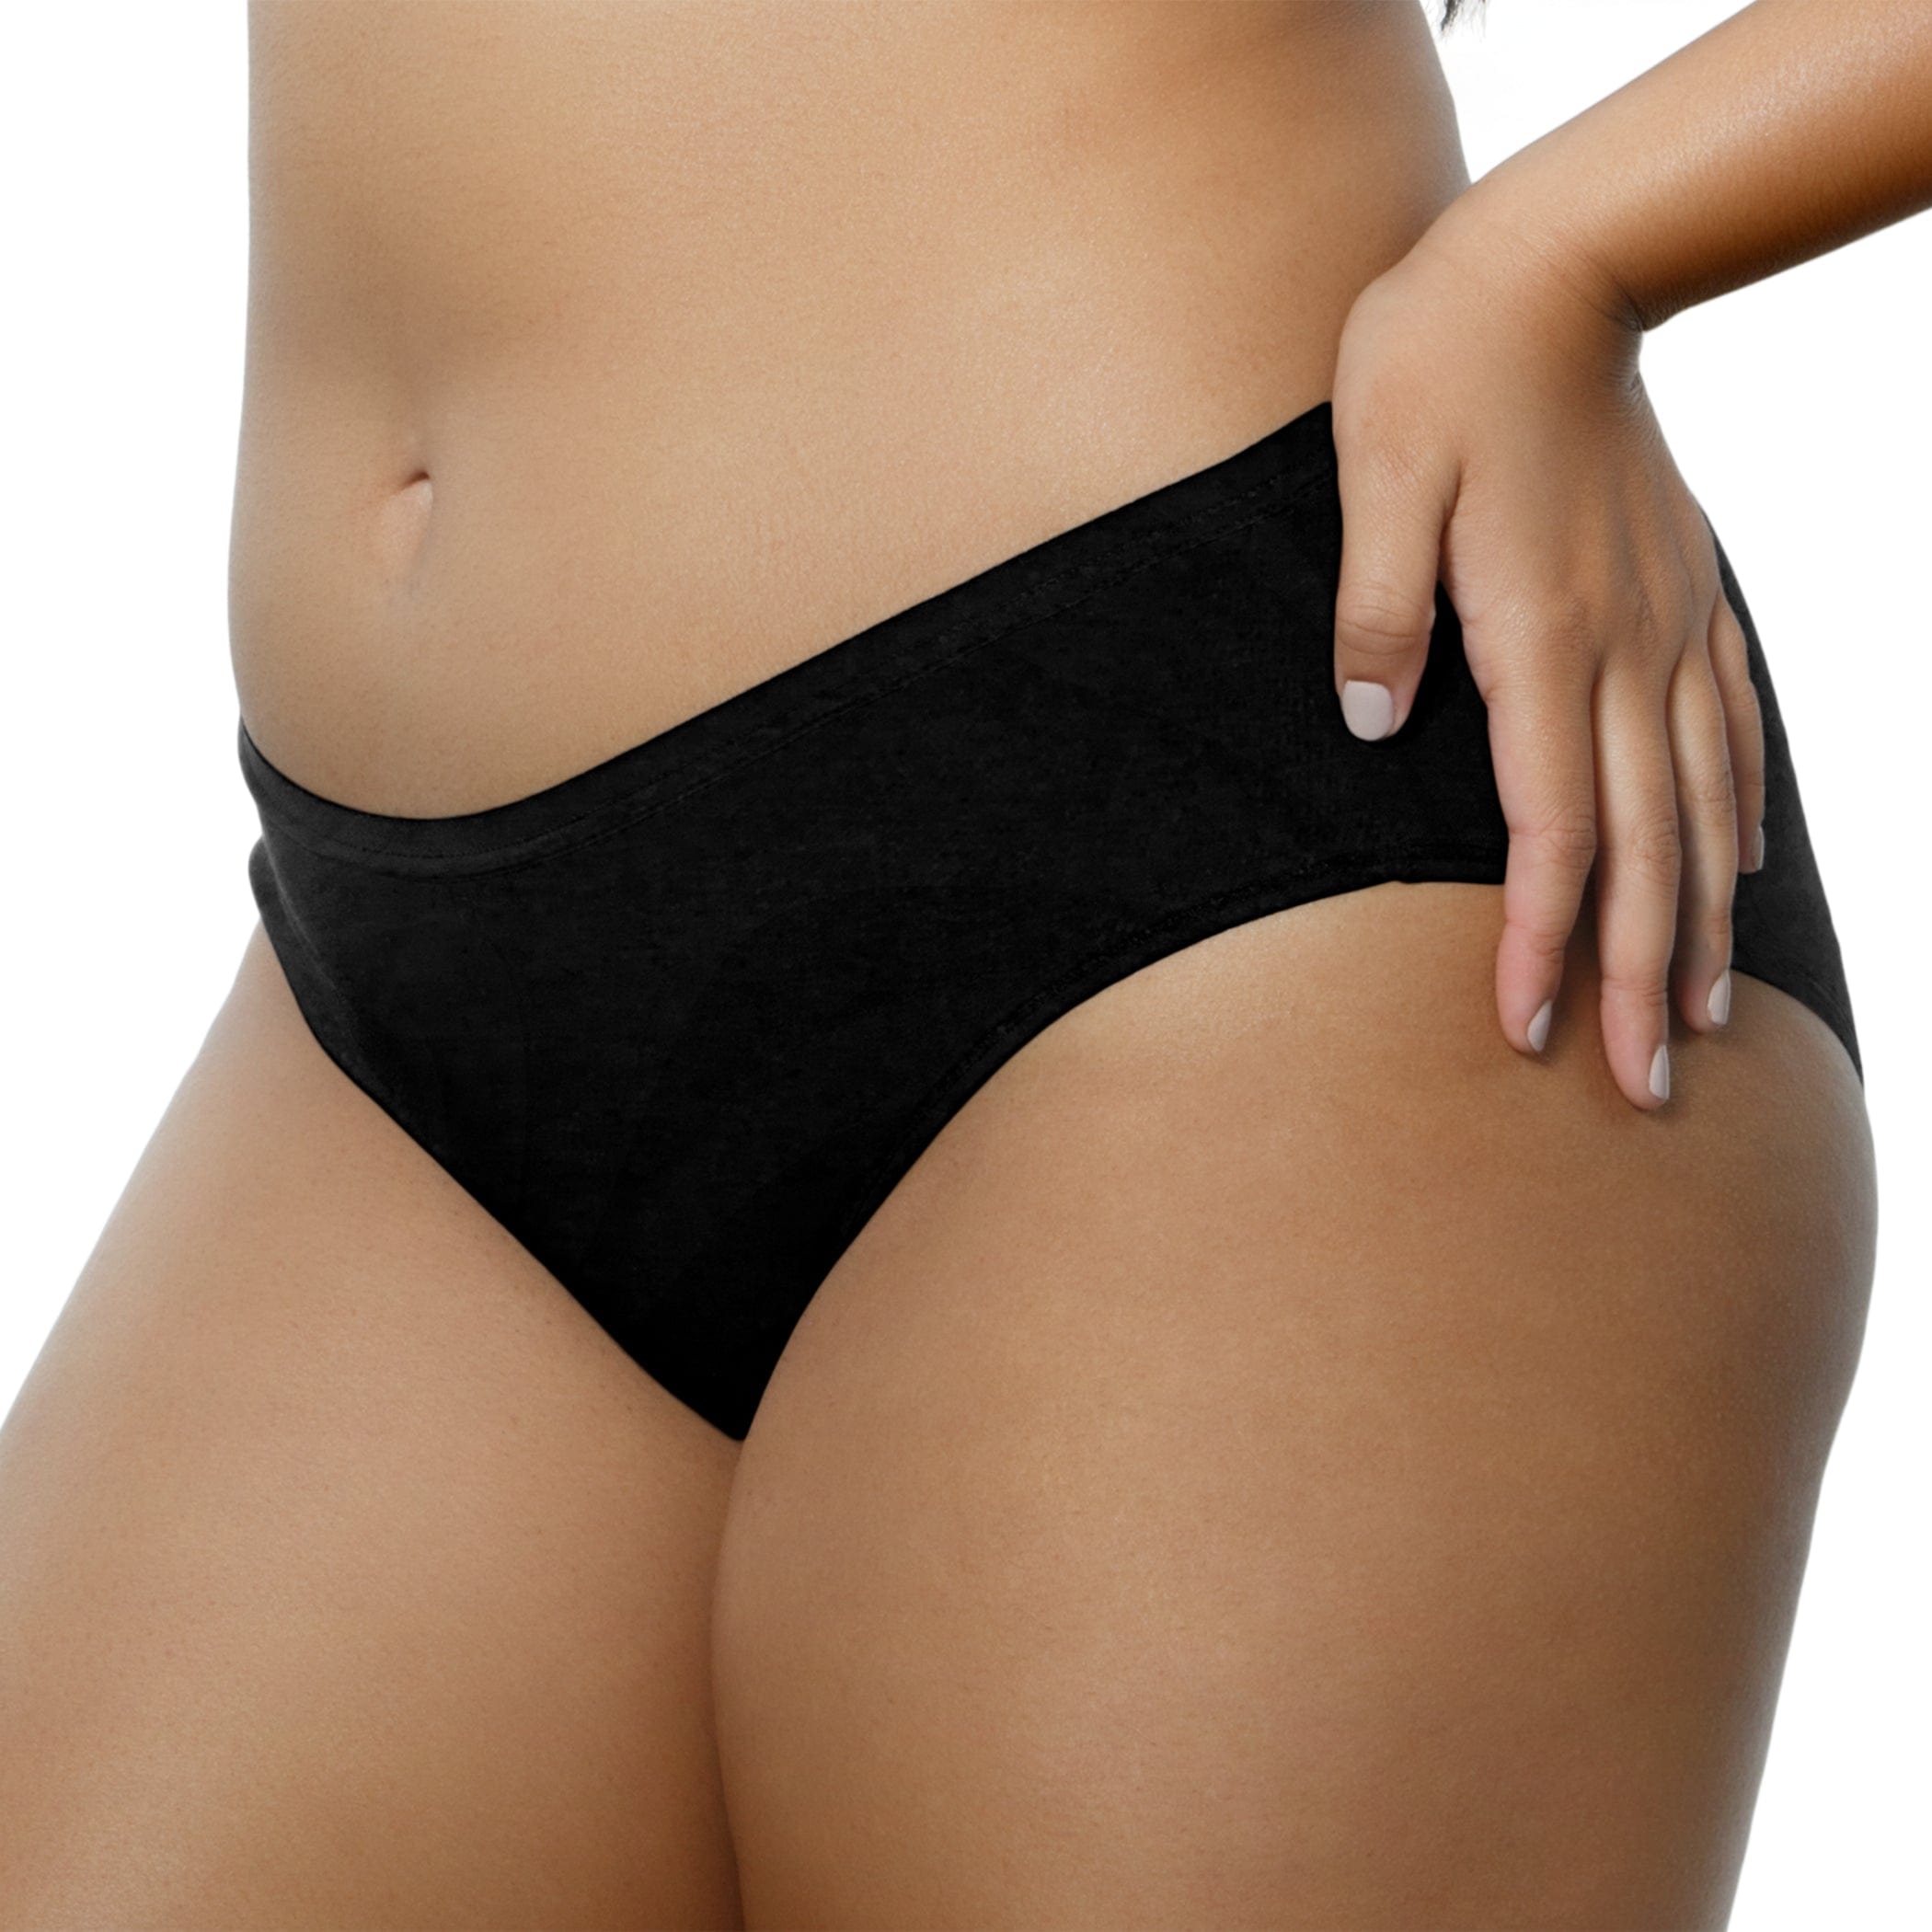 SAYFUT Women's Underwear Cotton Brief Panty,Soft Stretch Cheekini Hipster  Briefs 4 Pack/Black,Gray